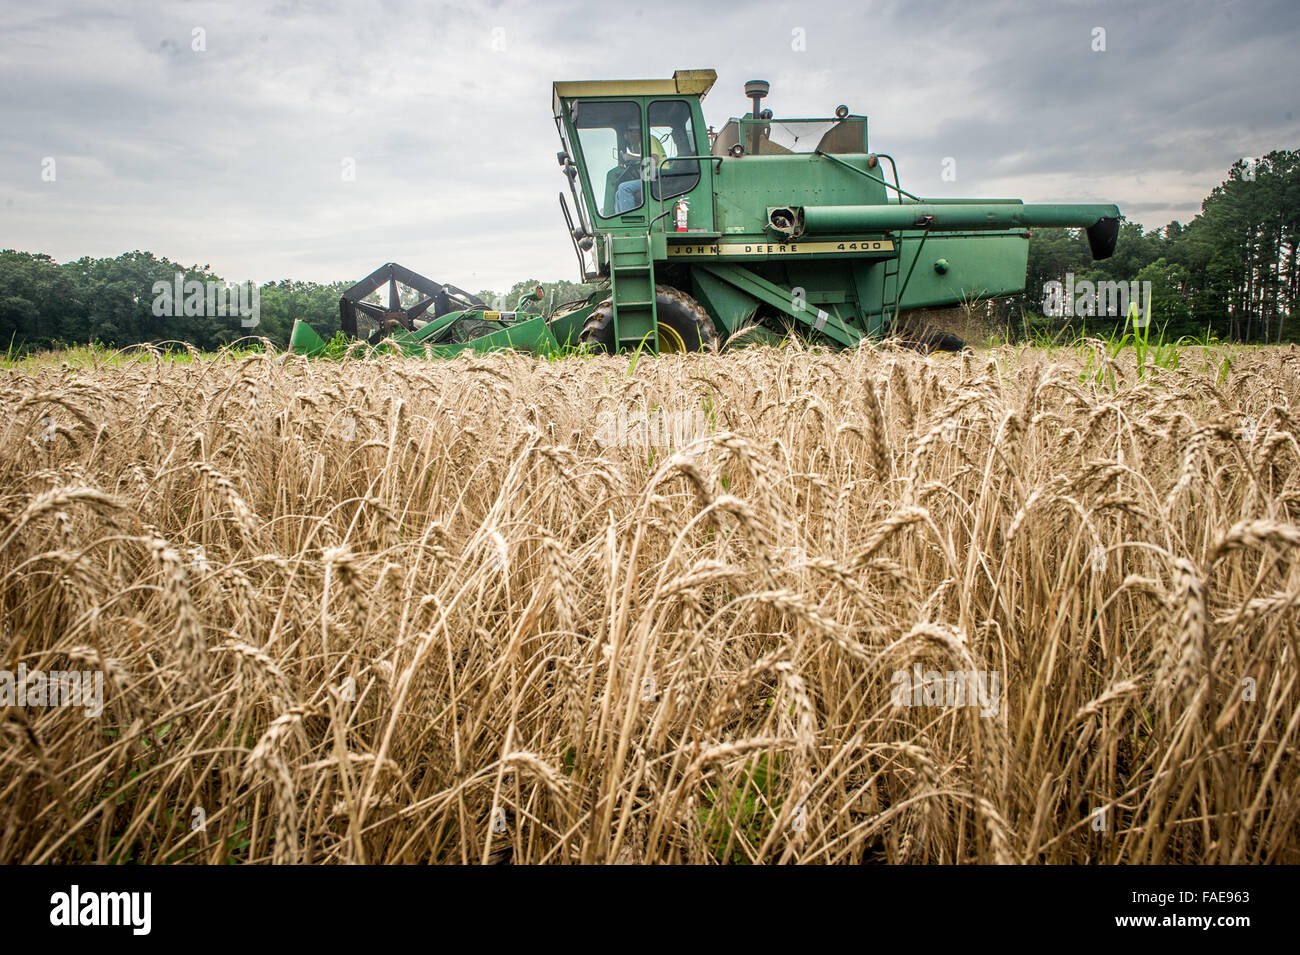 La récolte d'un champ de blé de l'agriculteur Banque D'Images